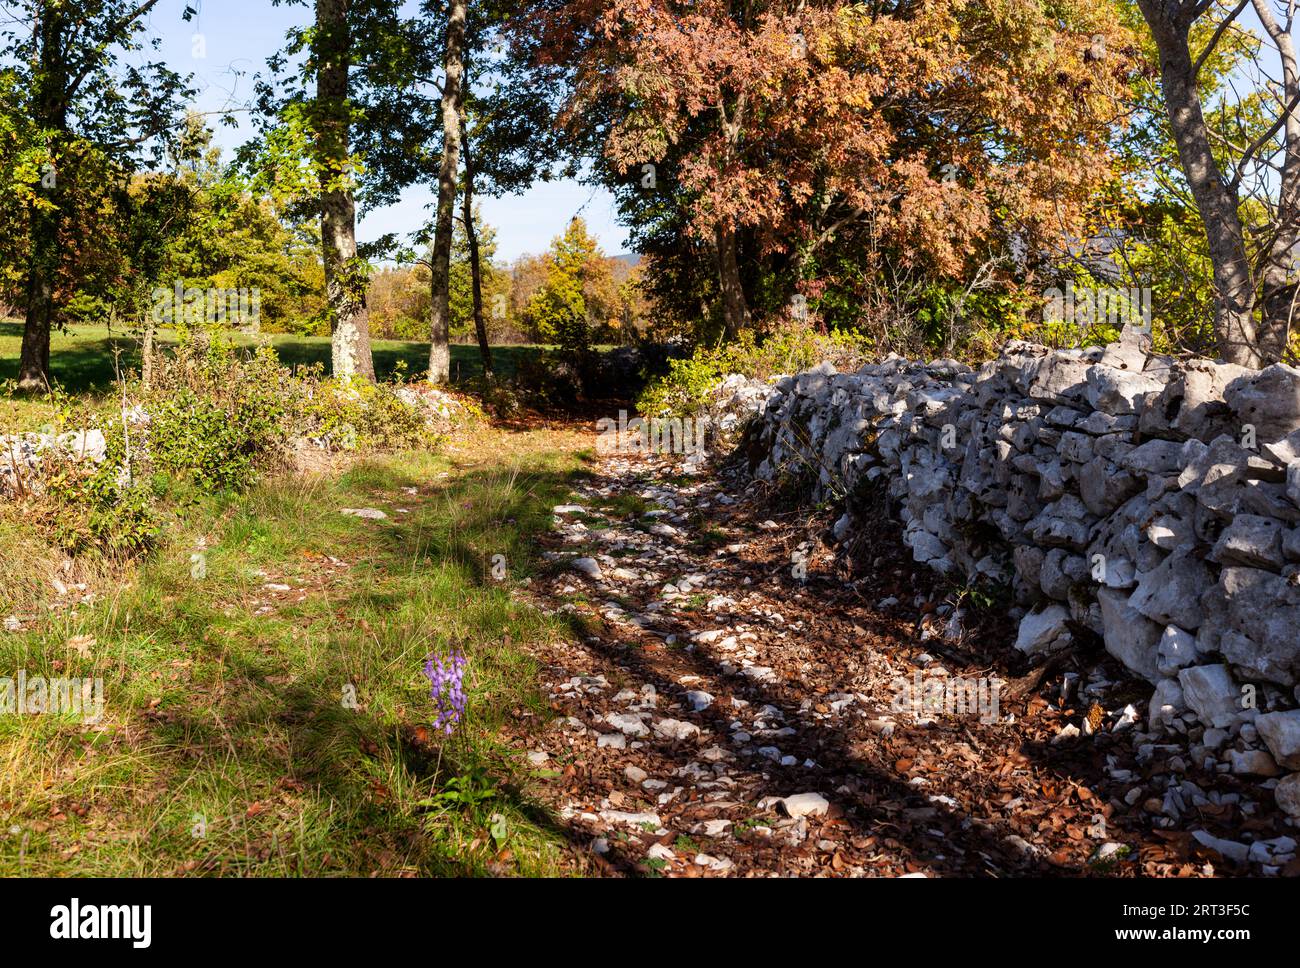 Alte slowenische Steinmauer in einem wilden Garten. Trockenwand genannt, weil die Steine nicht mit Mörtel fixiert sind, sondern einfach überlappend und verriegelt sind Stockfoto